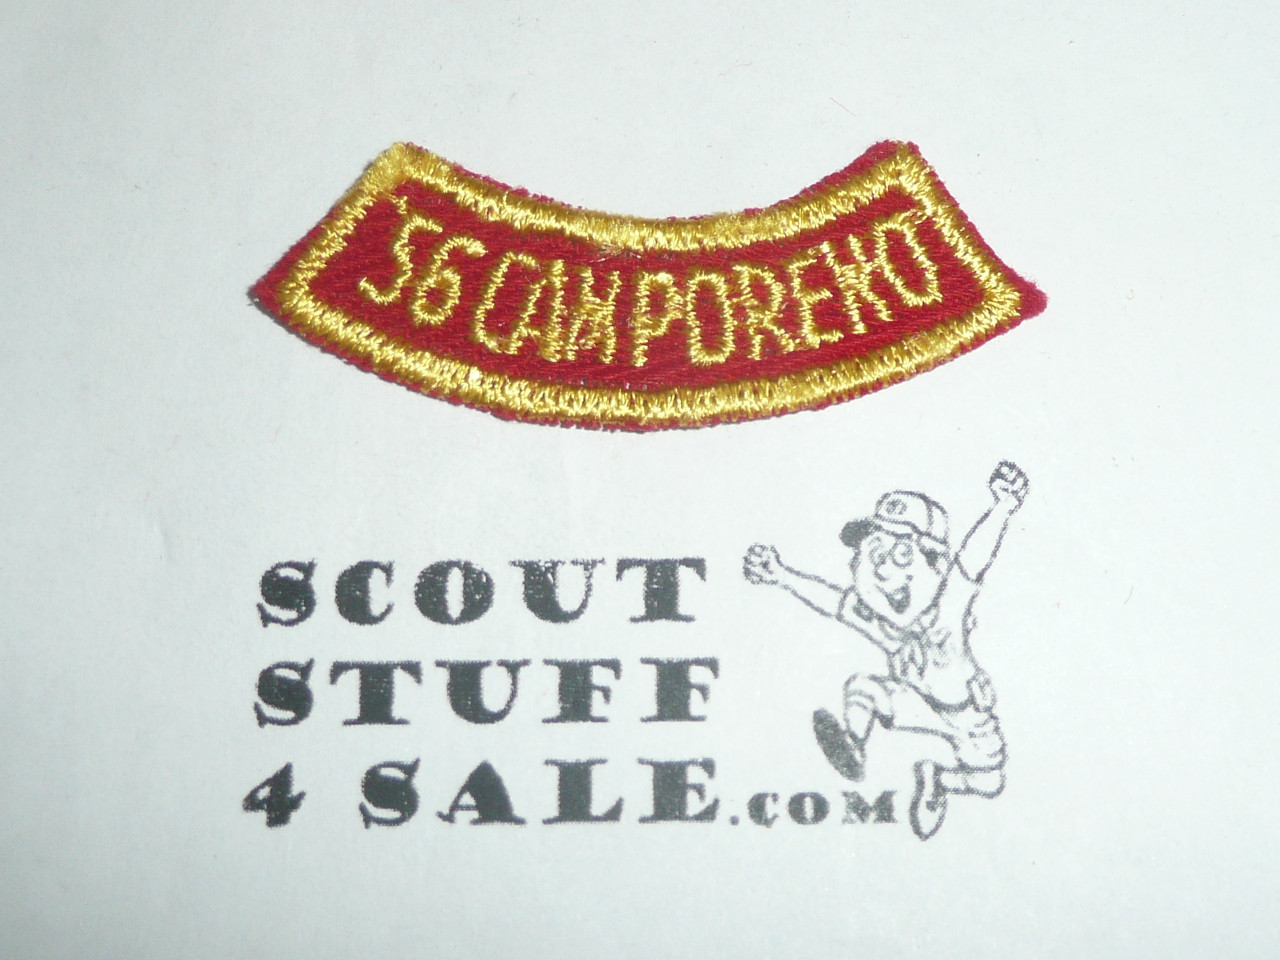 San Fernando Valley Council 1956 Scout Camporeno Segment